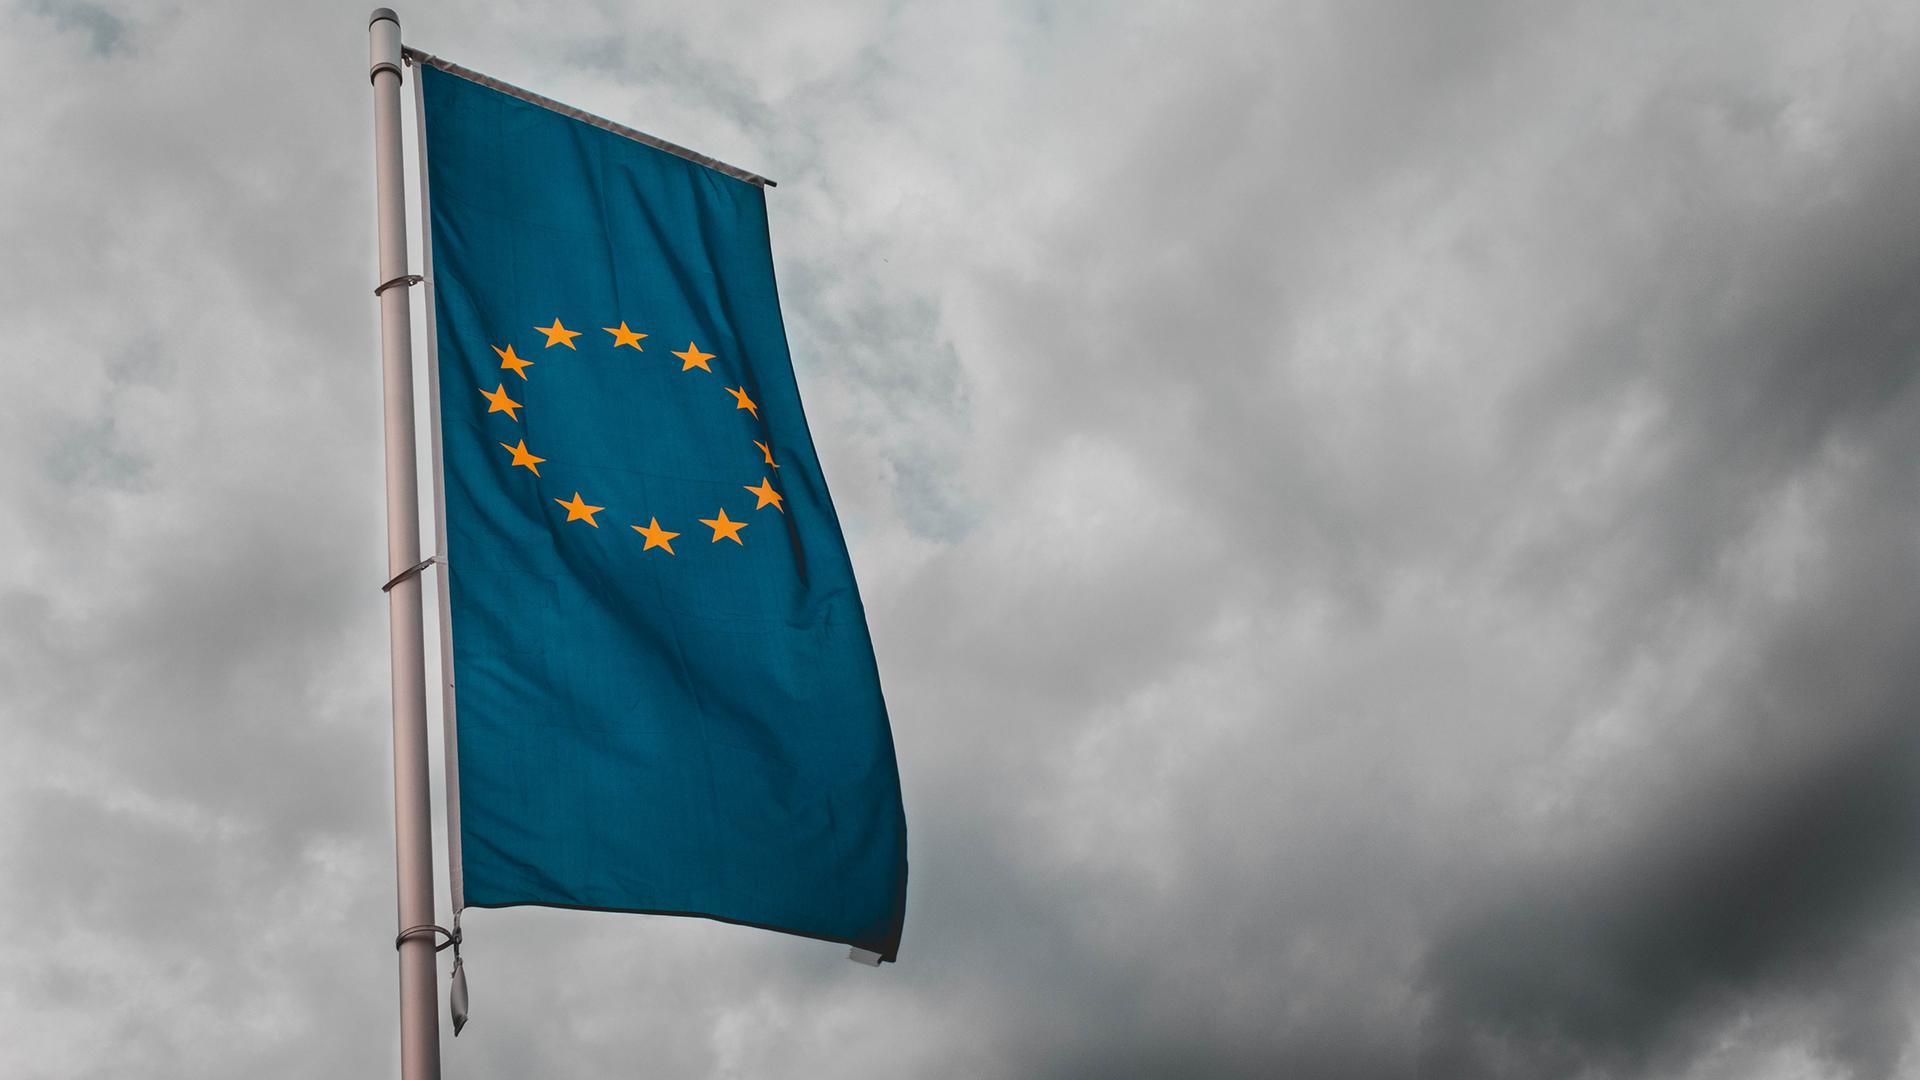 Eine Flagge mit den Sternen der Europäischen Union weht vor wolkenbedecktem Himmel.